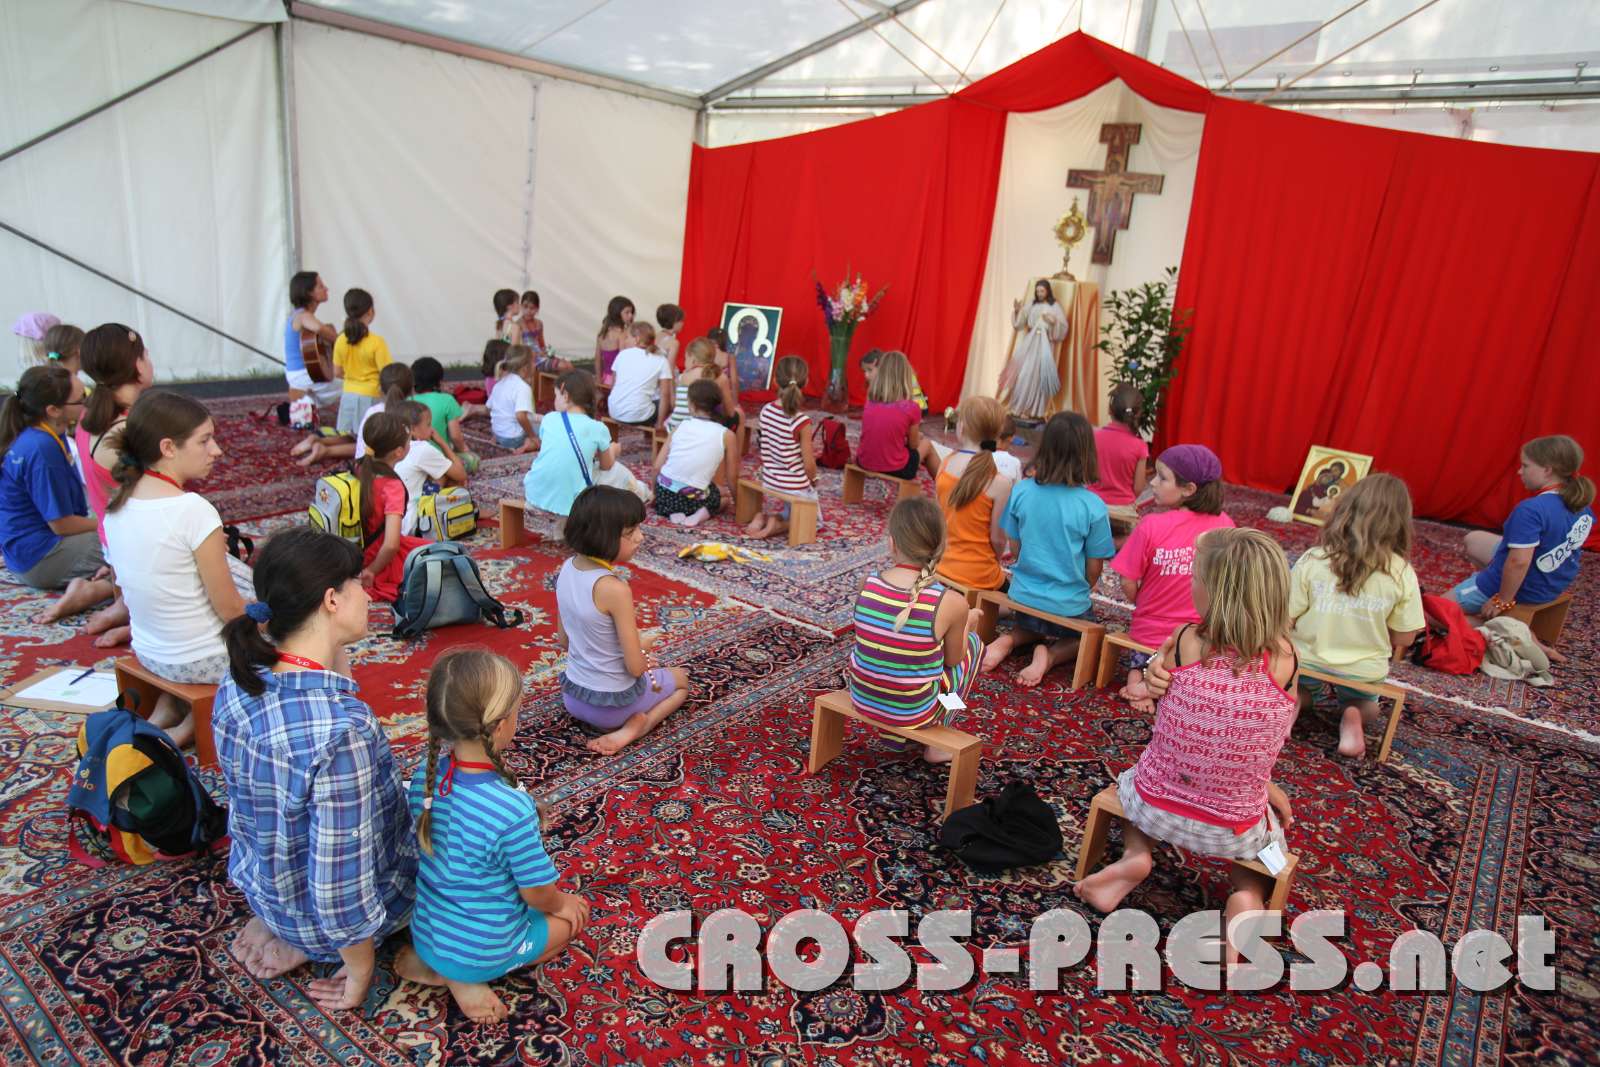 2010.07.23_09.44.48.jpg - Im Anbetungszelt wurden die Kindern auf  das Sakrament der Vershnung vorbereitet und sangen Lobpreis, whrend sich die "Mutigen" -und das waren sie fast alle- trauten, zu einem Beichtvater zu gehen.